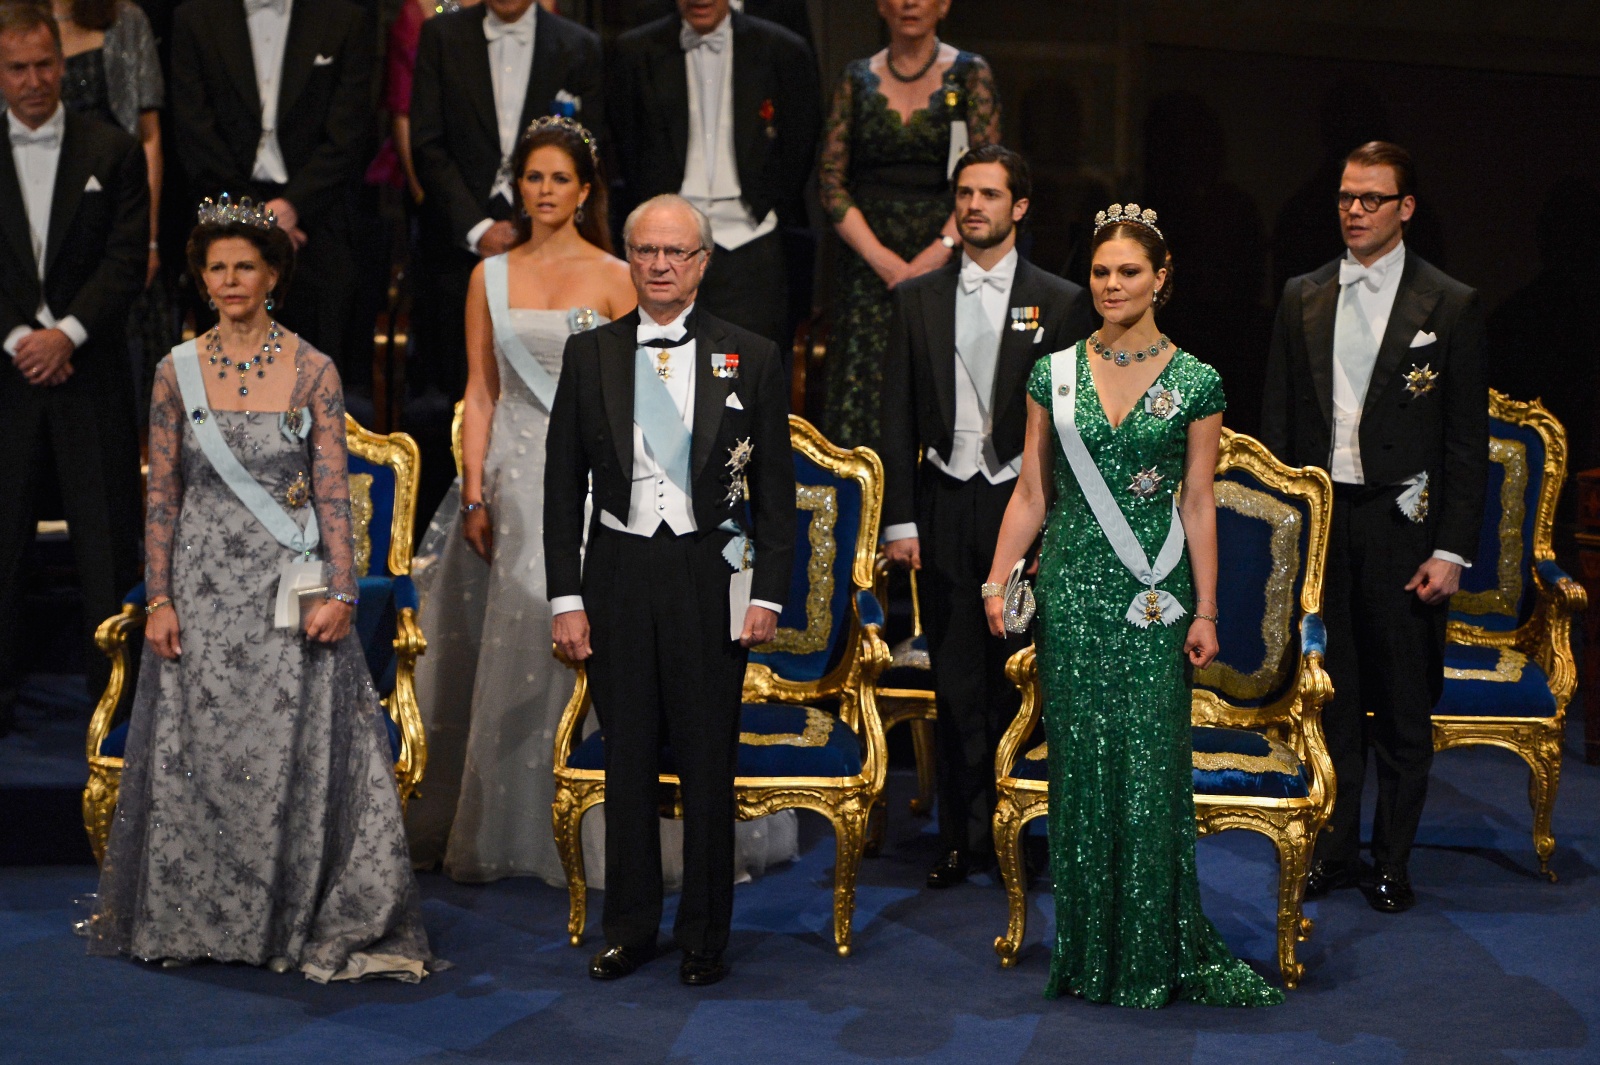 Familia Real Sueca Família Real Da Suécia Chora A Morte De Familiar